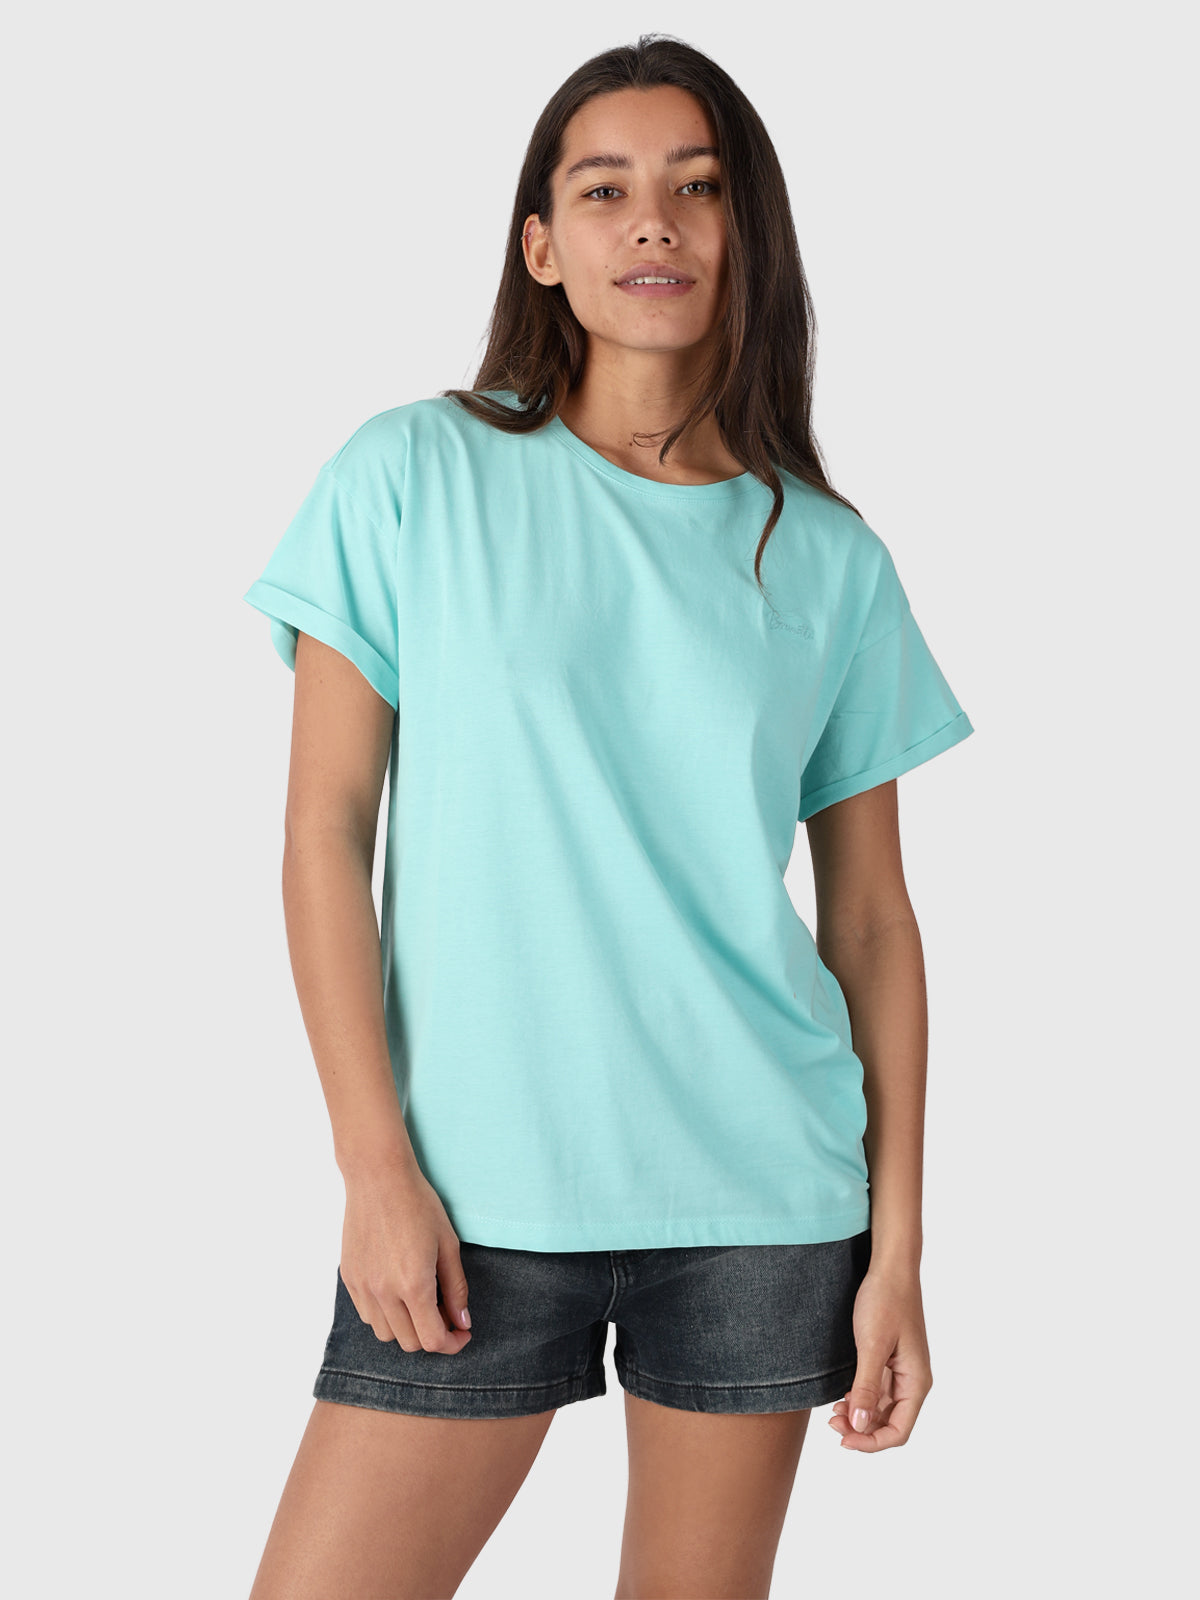 Tops - T-Shirts & Women